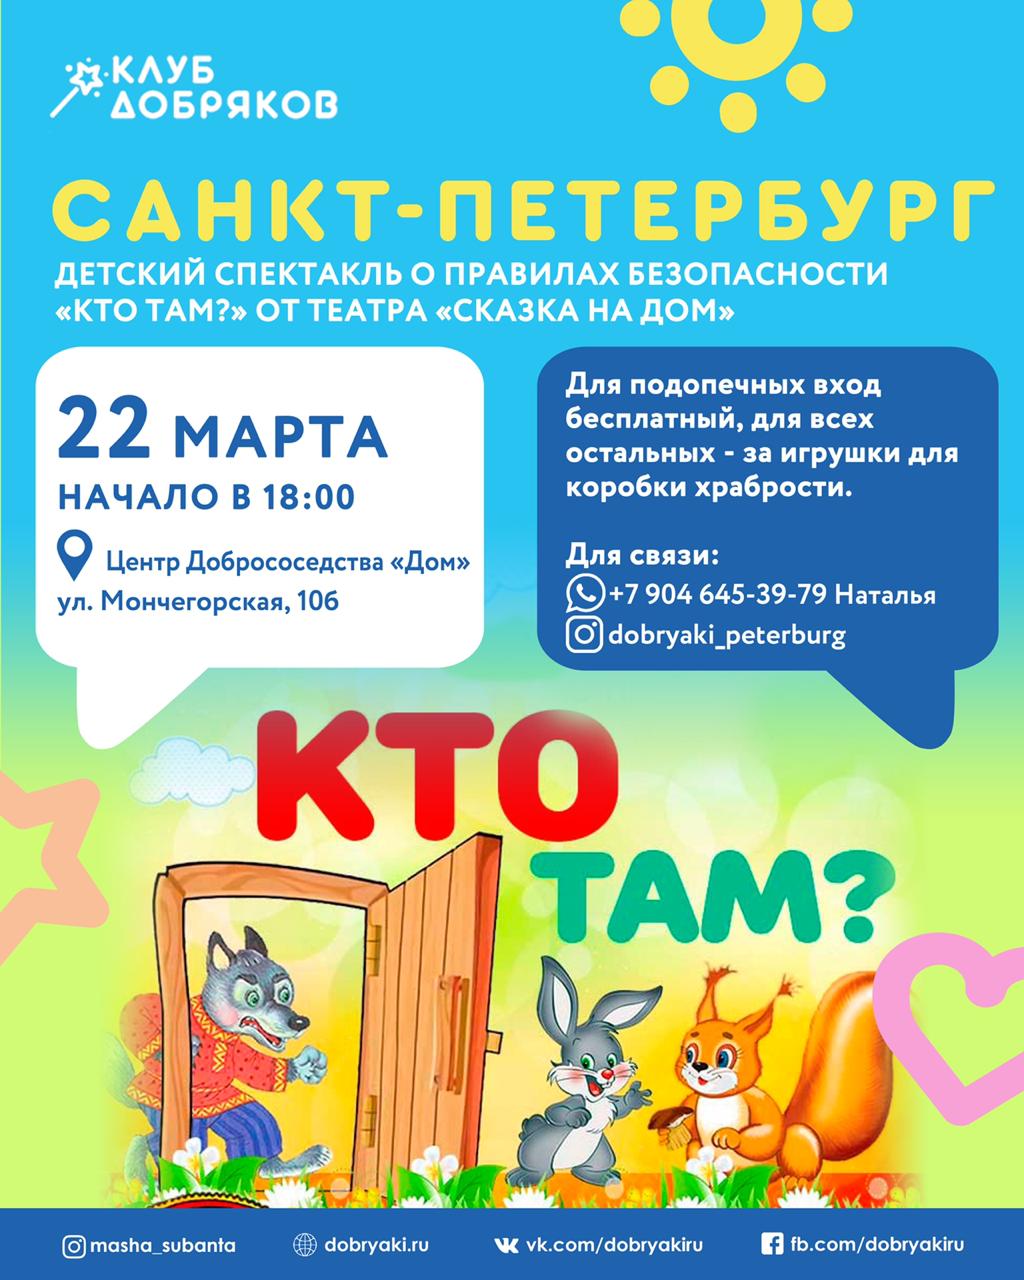 Добряки Петербурга проведут благотворительный спектакль для детей